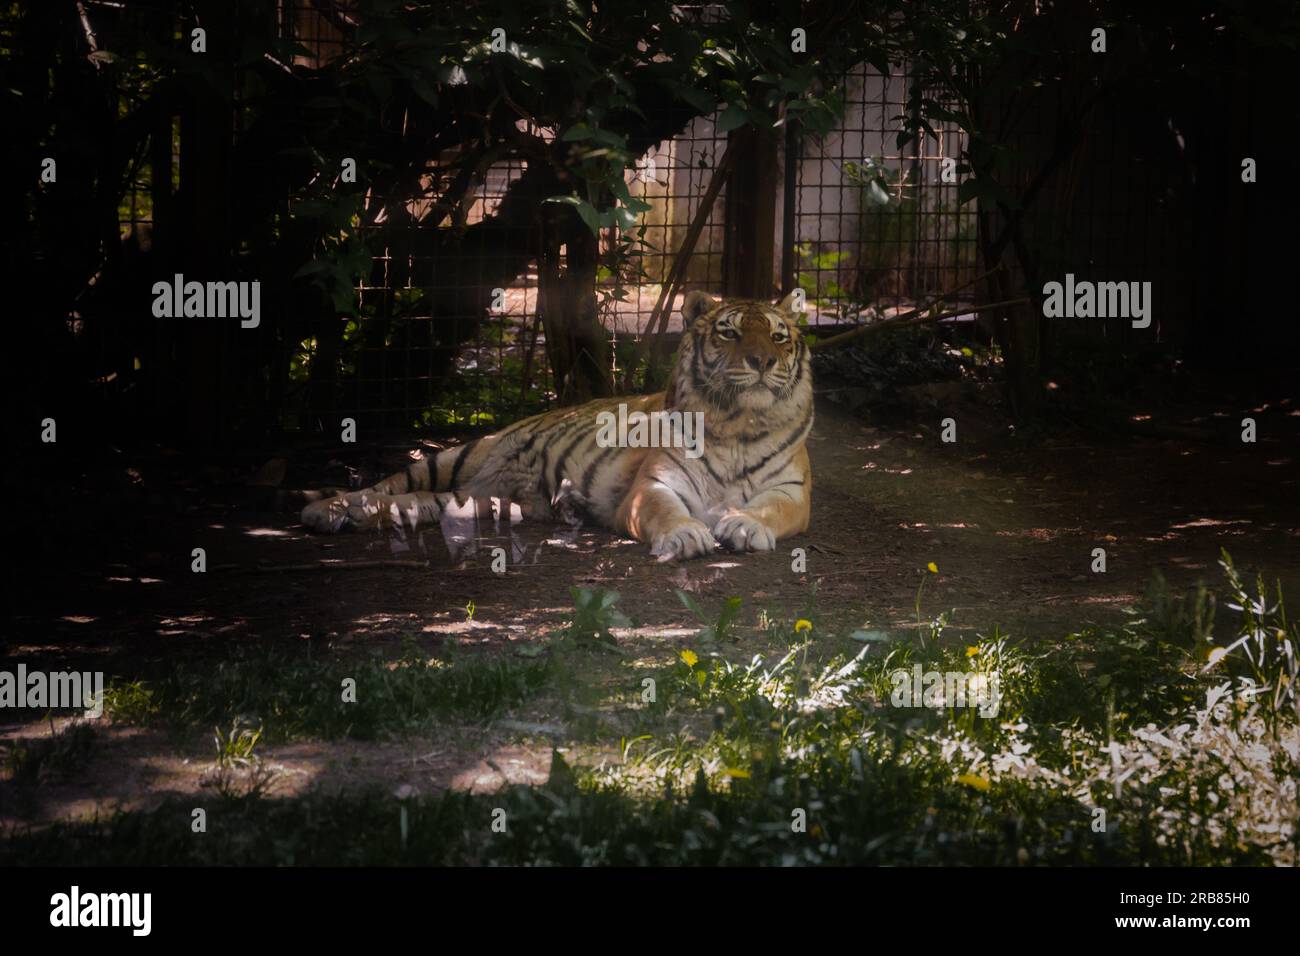 Dieses Foto zeigt einen erwachsenen Tiger, der in einem Wildpark lebt. Der Tiger sieht entspannt und neugierig aus und genießt die geräumige und natürliche Umgebung Stockfoto